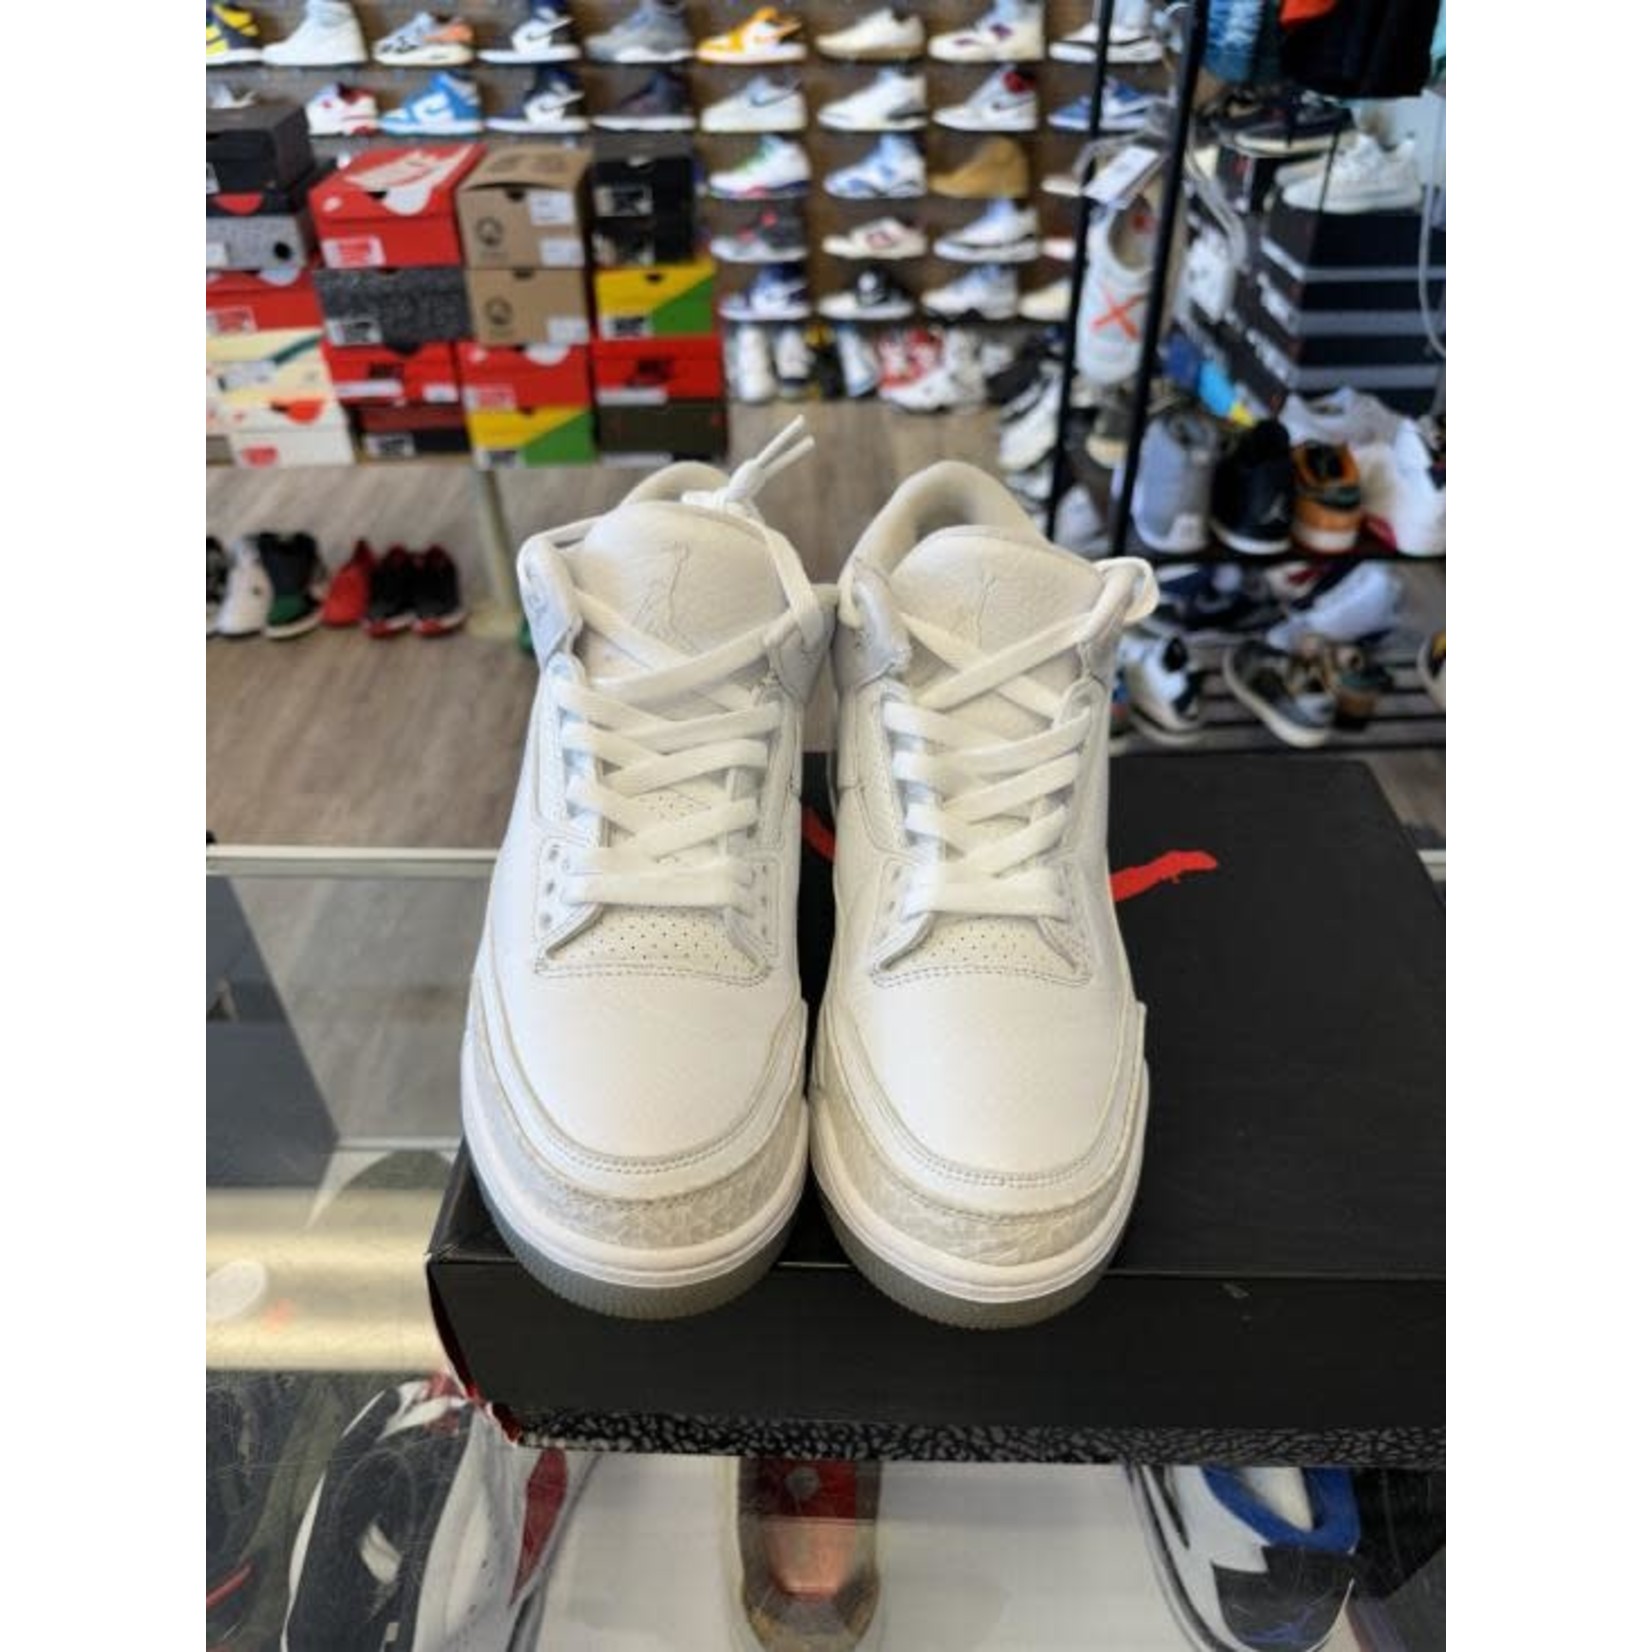 Jordan Jordan 3 Retro Pure White (2018) Size 10.5, PREOWNED